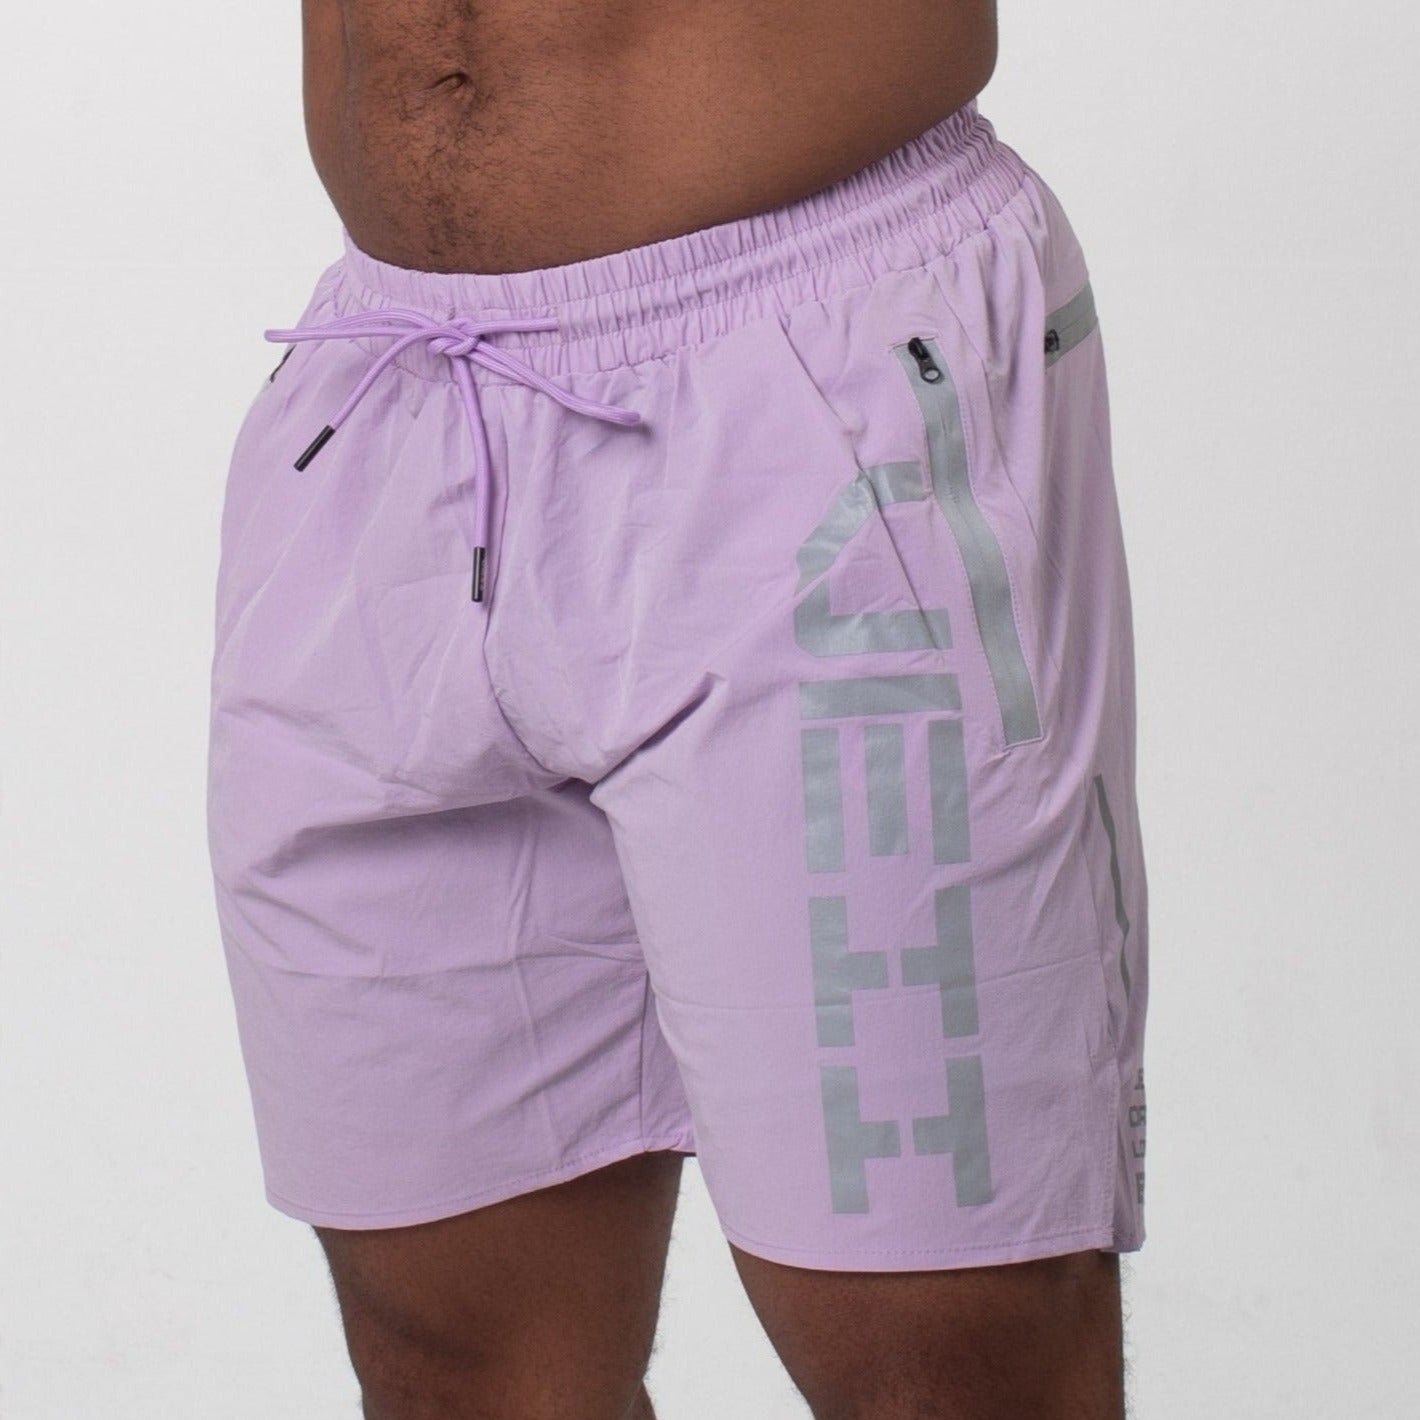 Lavender stealth shorts for men, Lavender